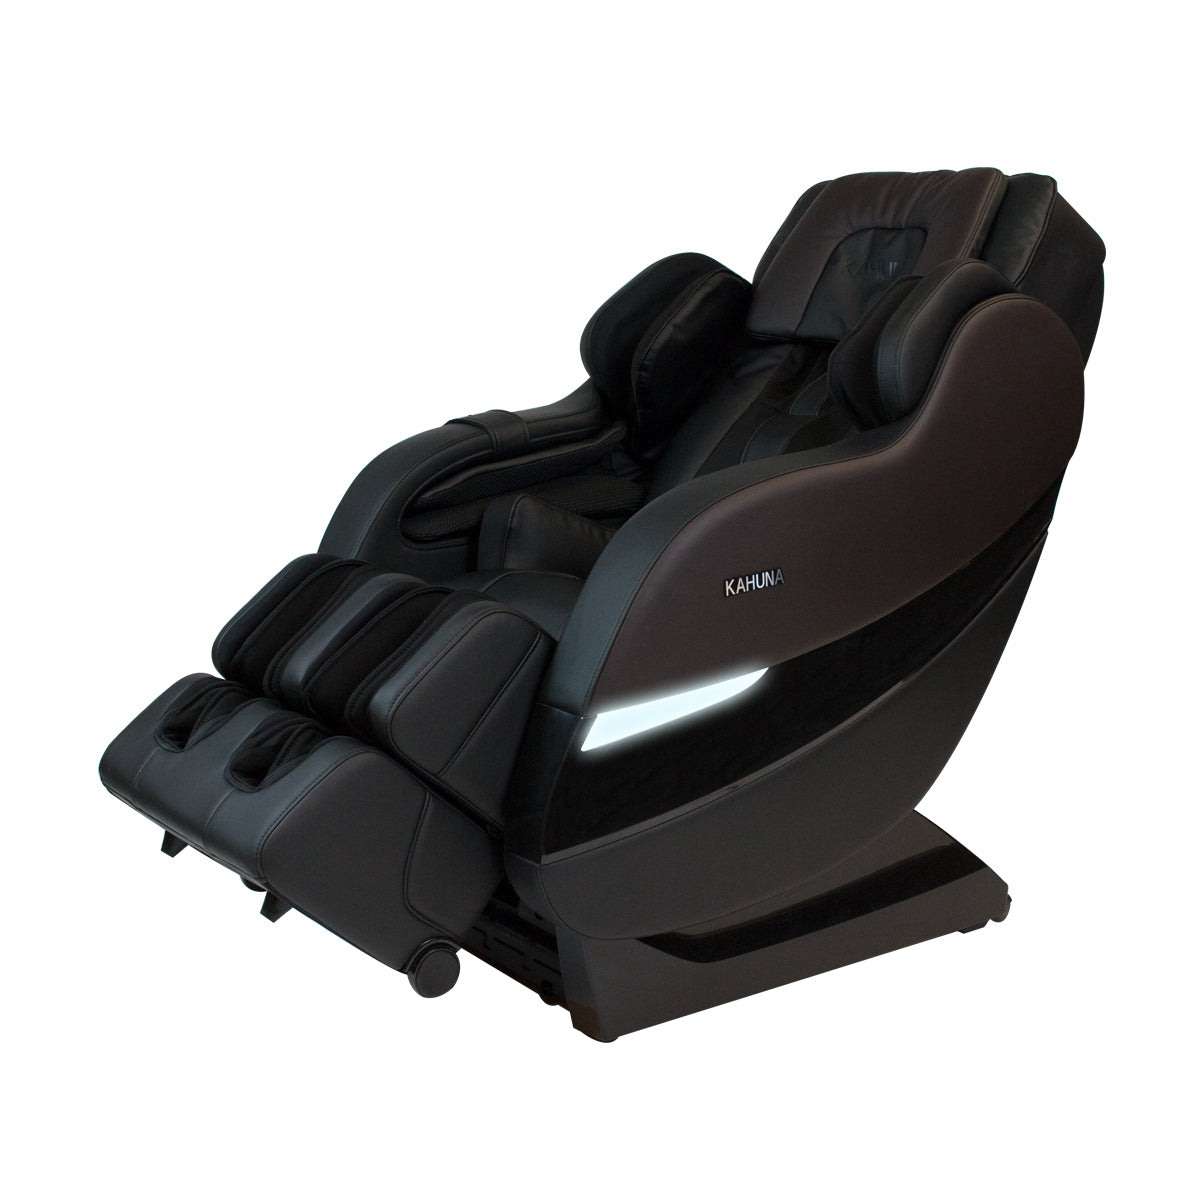 Kahuna SM-7300 Massage Chair Side Angle